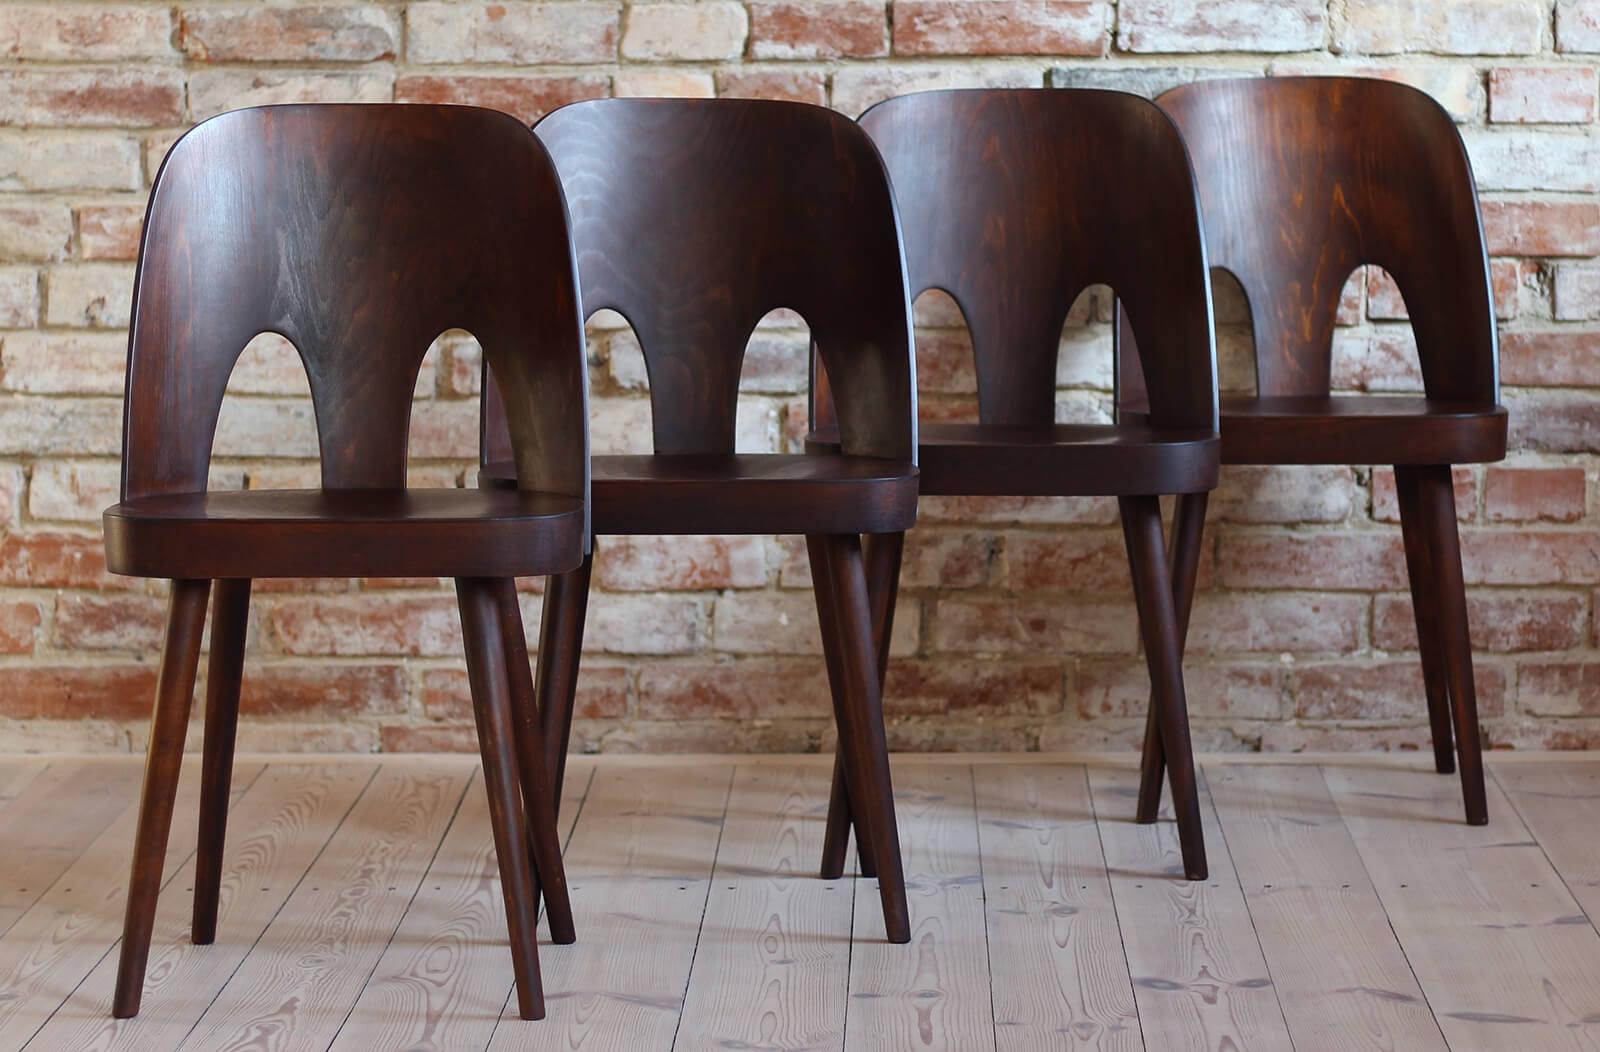 Dieses Set aus vier Vintage-Esszimmerstühlen wurde in den 1950er Jahren von Oswald Haerdtl entworfen, einem berühmten österreichischen Designer, der zusammen mit Josef Hoffmann die Café-Terrasse auf der Wiener Werkbund-Ausstellung von 1930